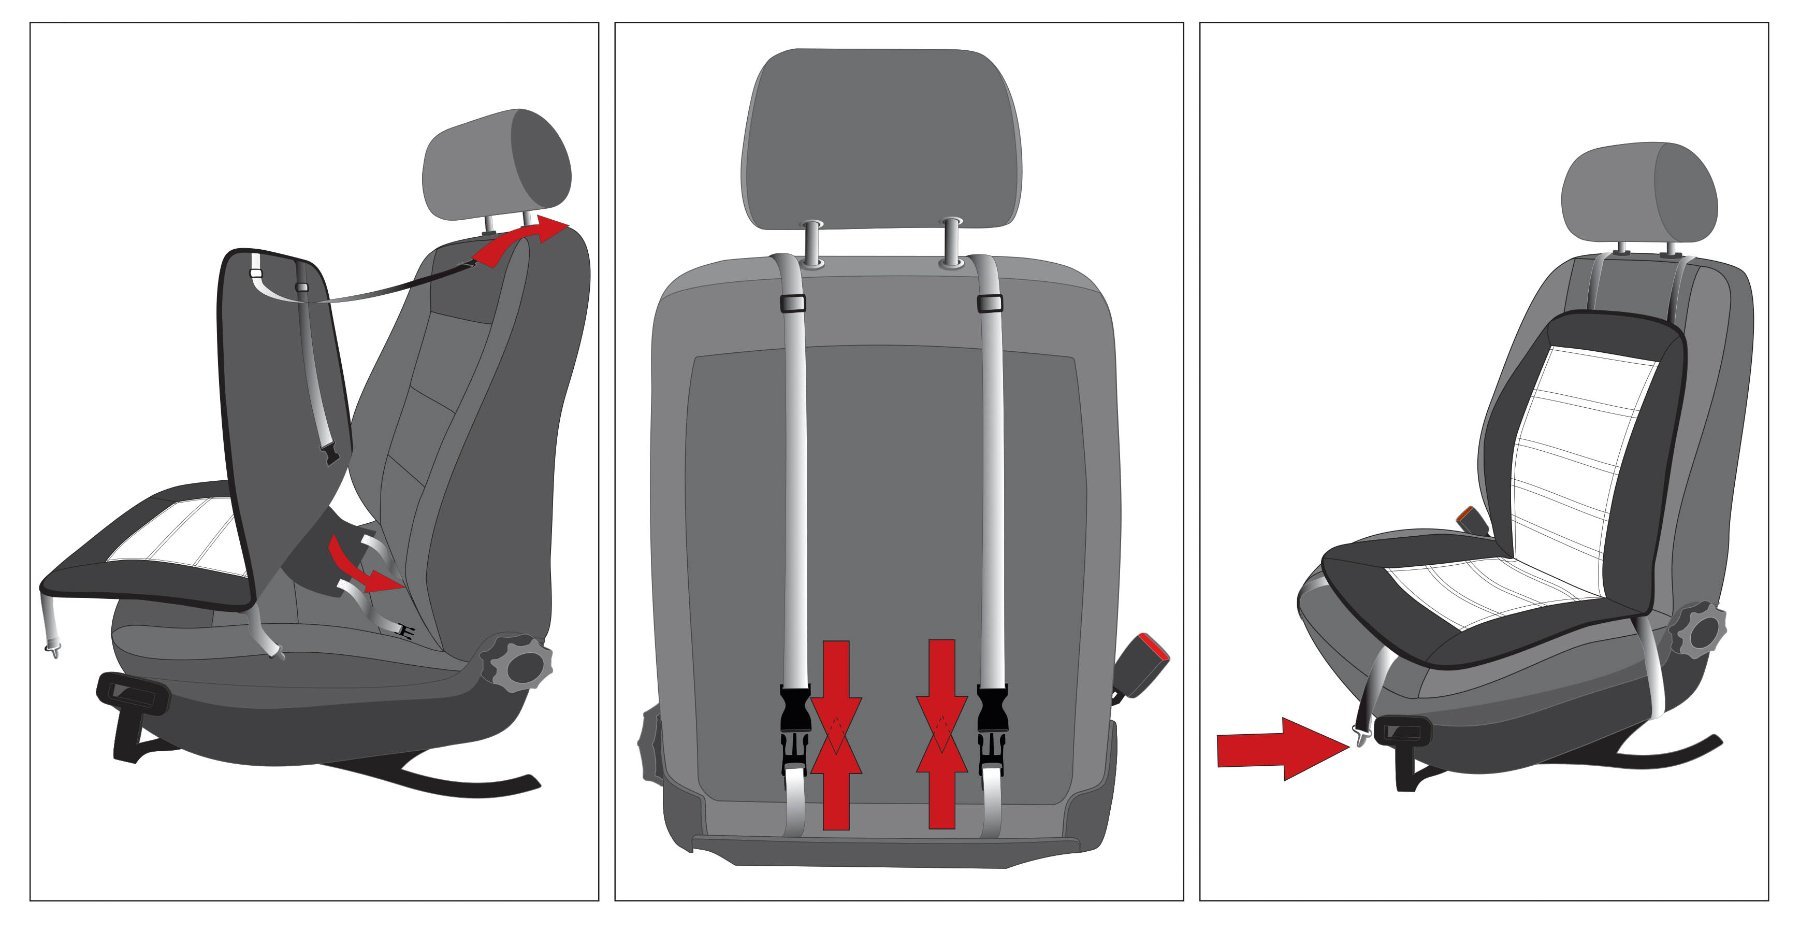 Premium Sitzauflage beheizbar, Modell Caldo - Sitzlehne & Sitzfläche individuell beheizbar, 2 Heizstufen wählbar, Auto Sitzheizung mit 12-Volt-Stecker